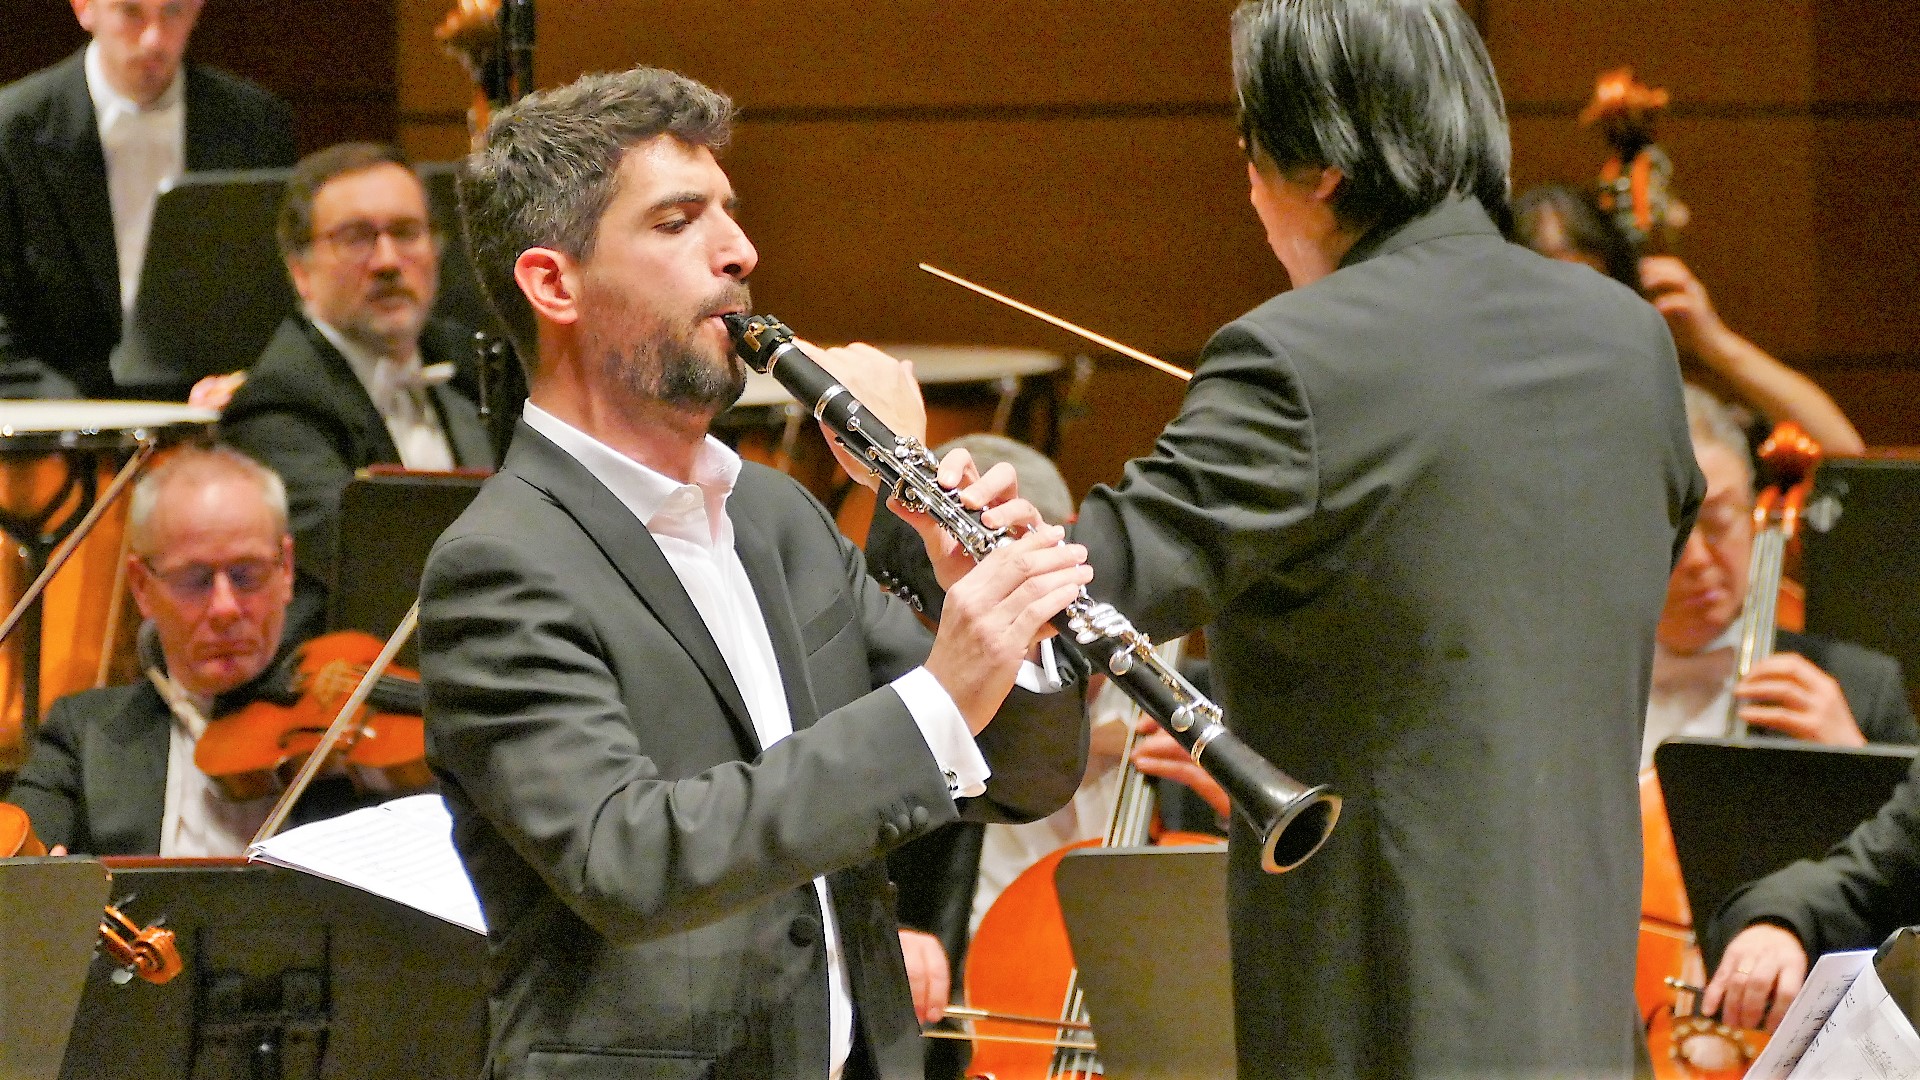 Marco Giani, Orchestra i Pomeriggi Musicali